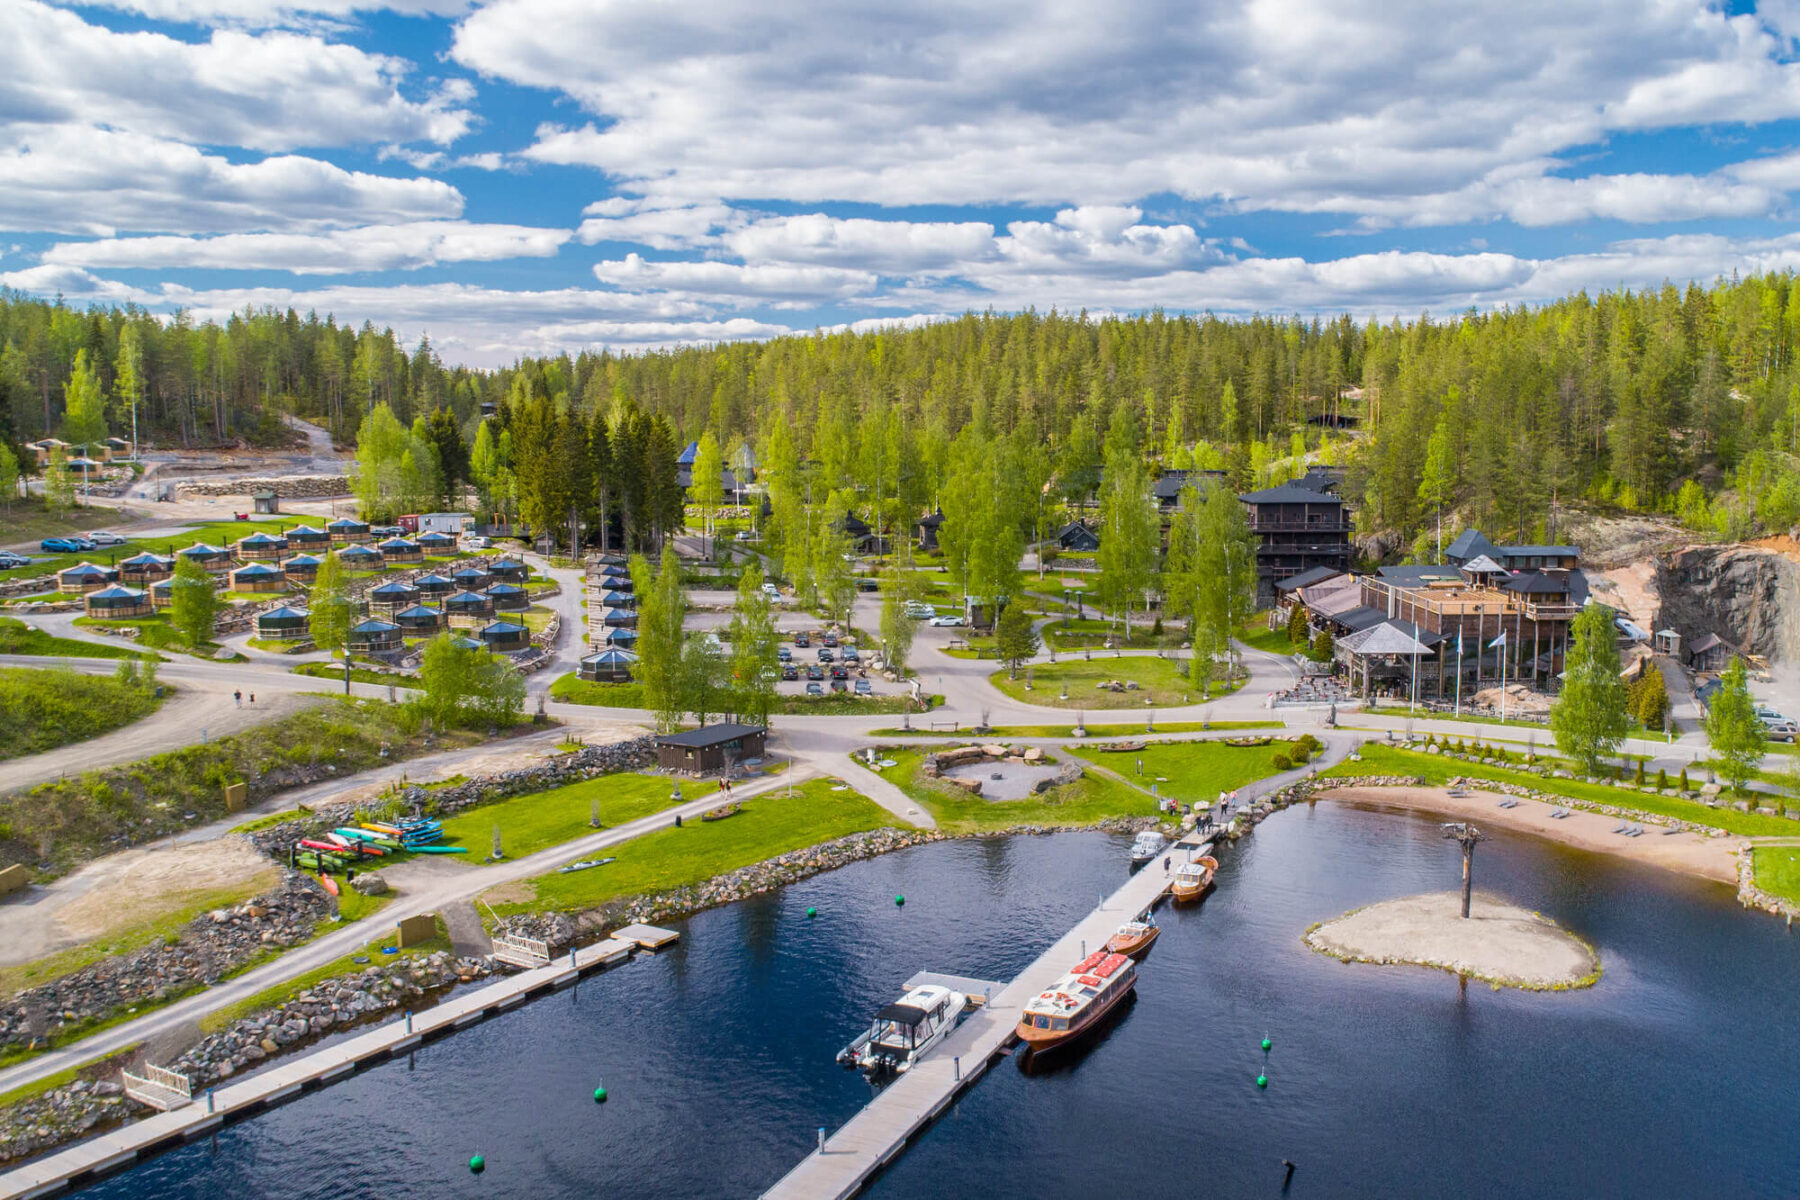 järvisydän-resort-from-the-lake